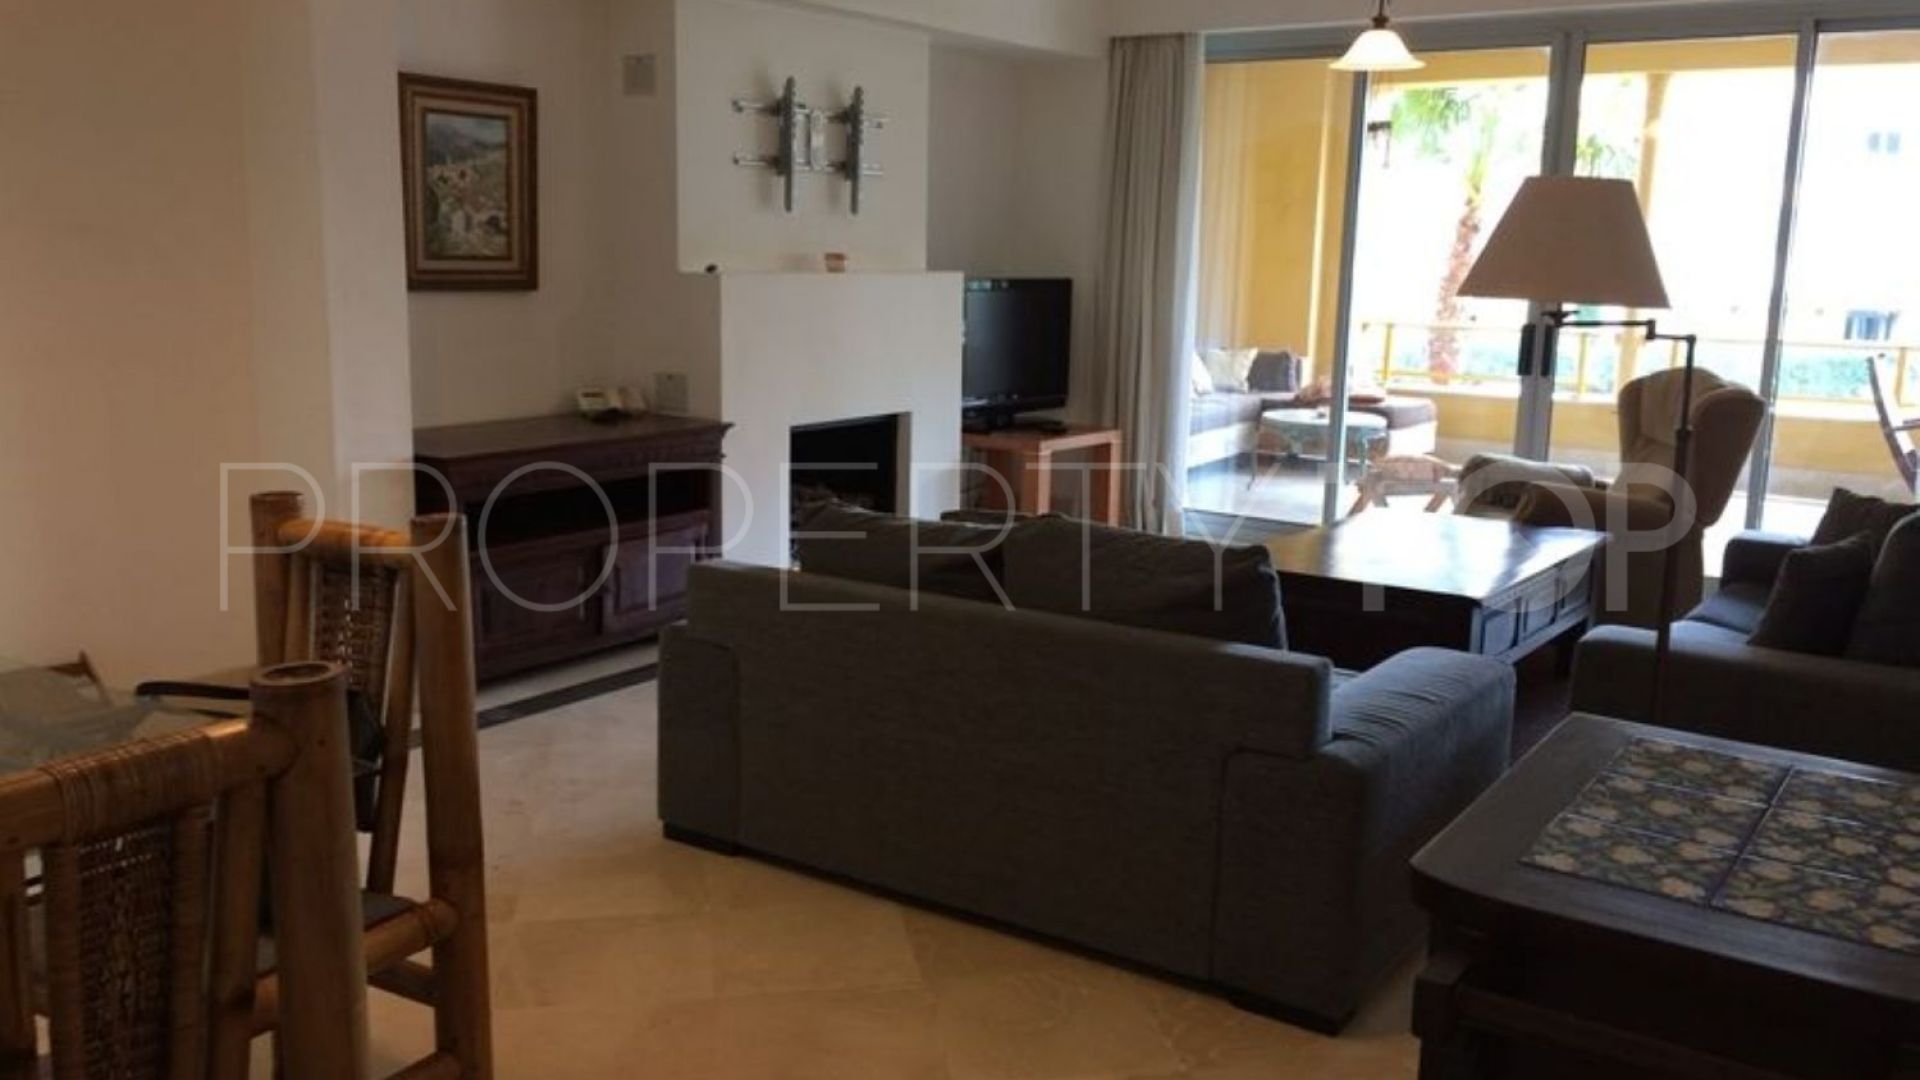 3 bedrooms flat in Marina de Sotogrande for sale